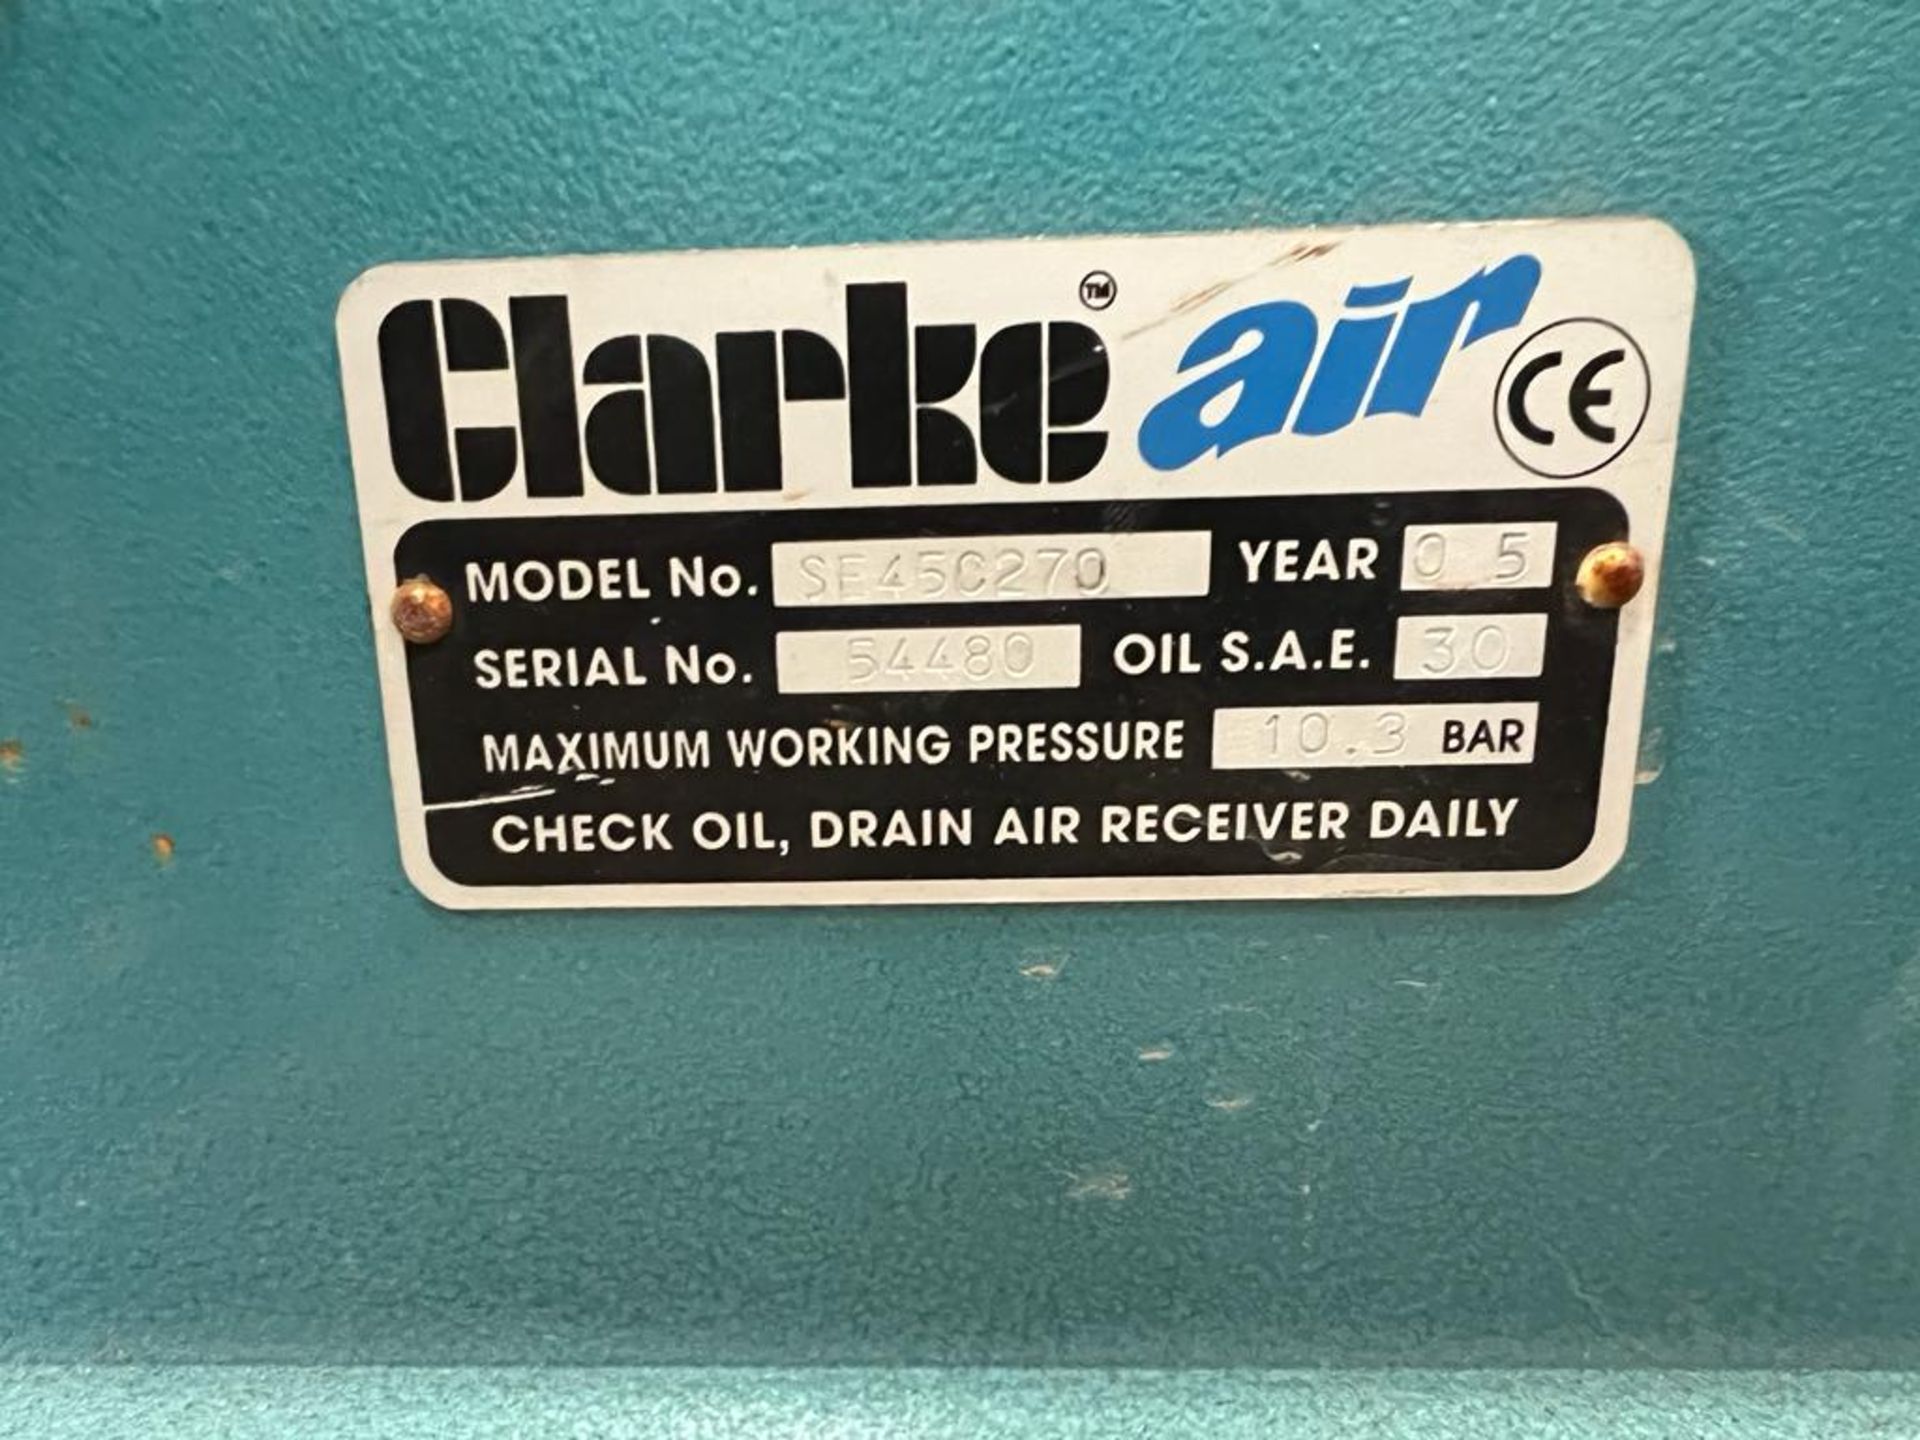 2005 Clarke Air SE45C270 Compressor *NO VAT* - Image 3 of 5